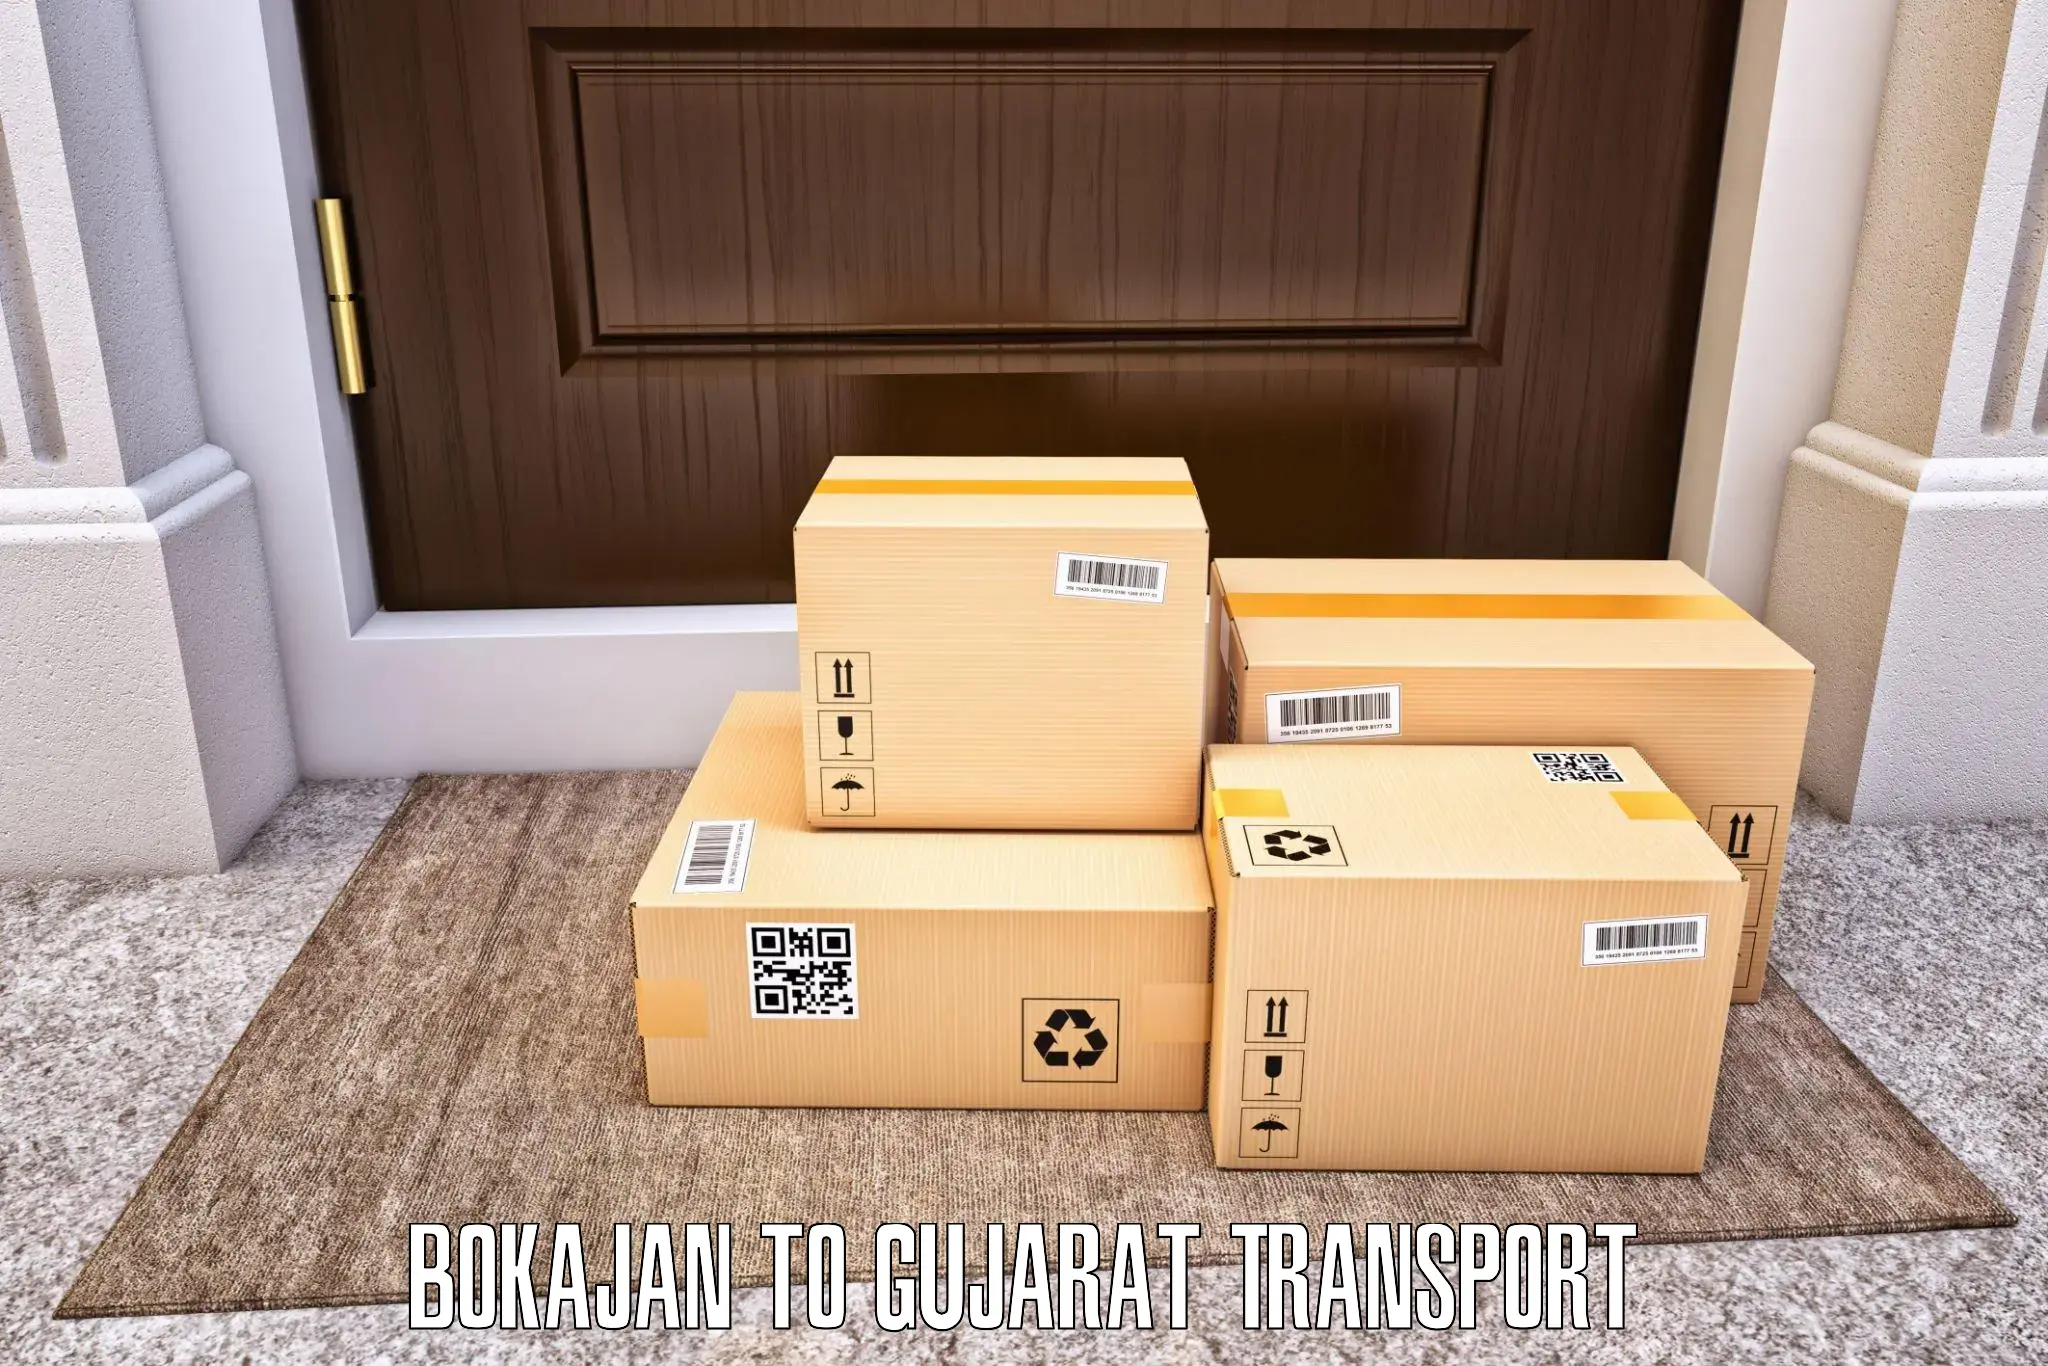 Logistics transportation services Bokajan to Vatadara